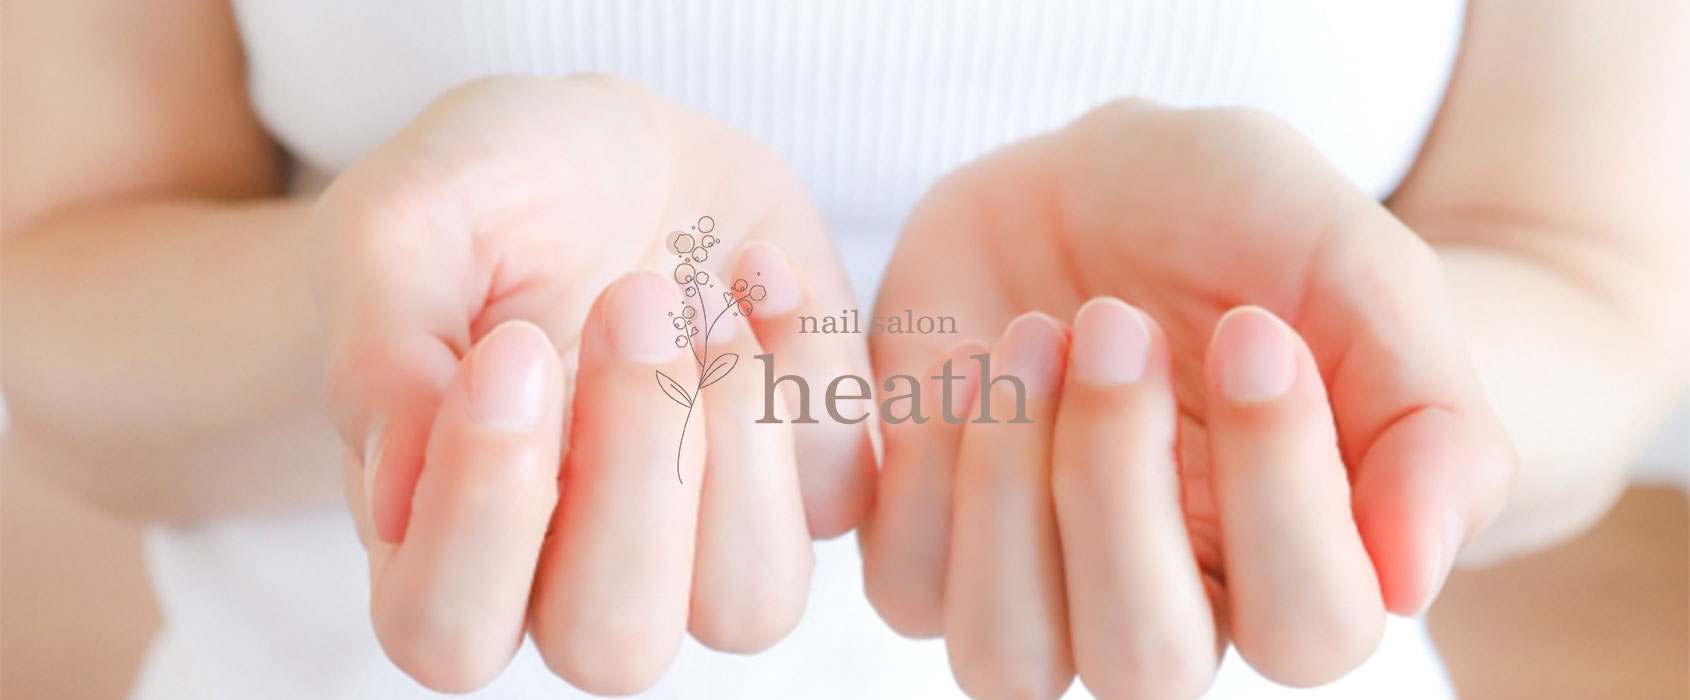 nail salon heath